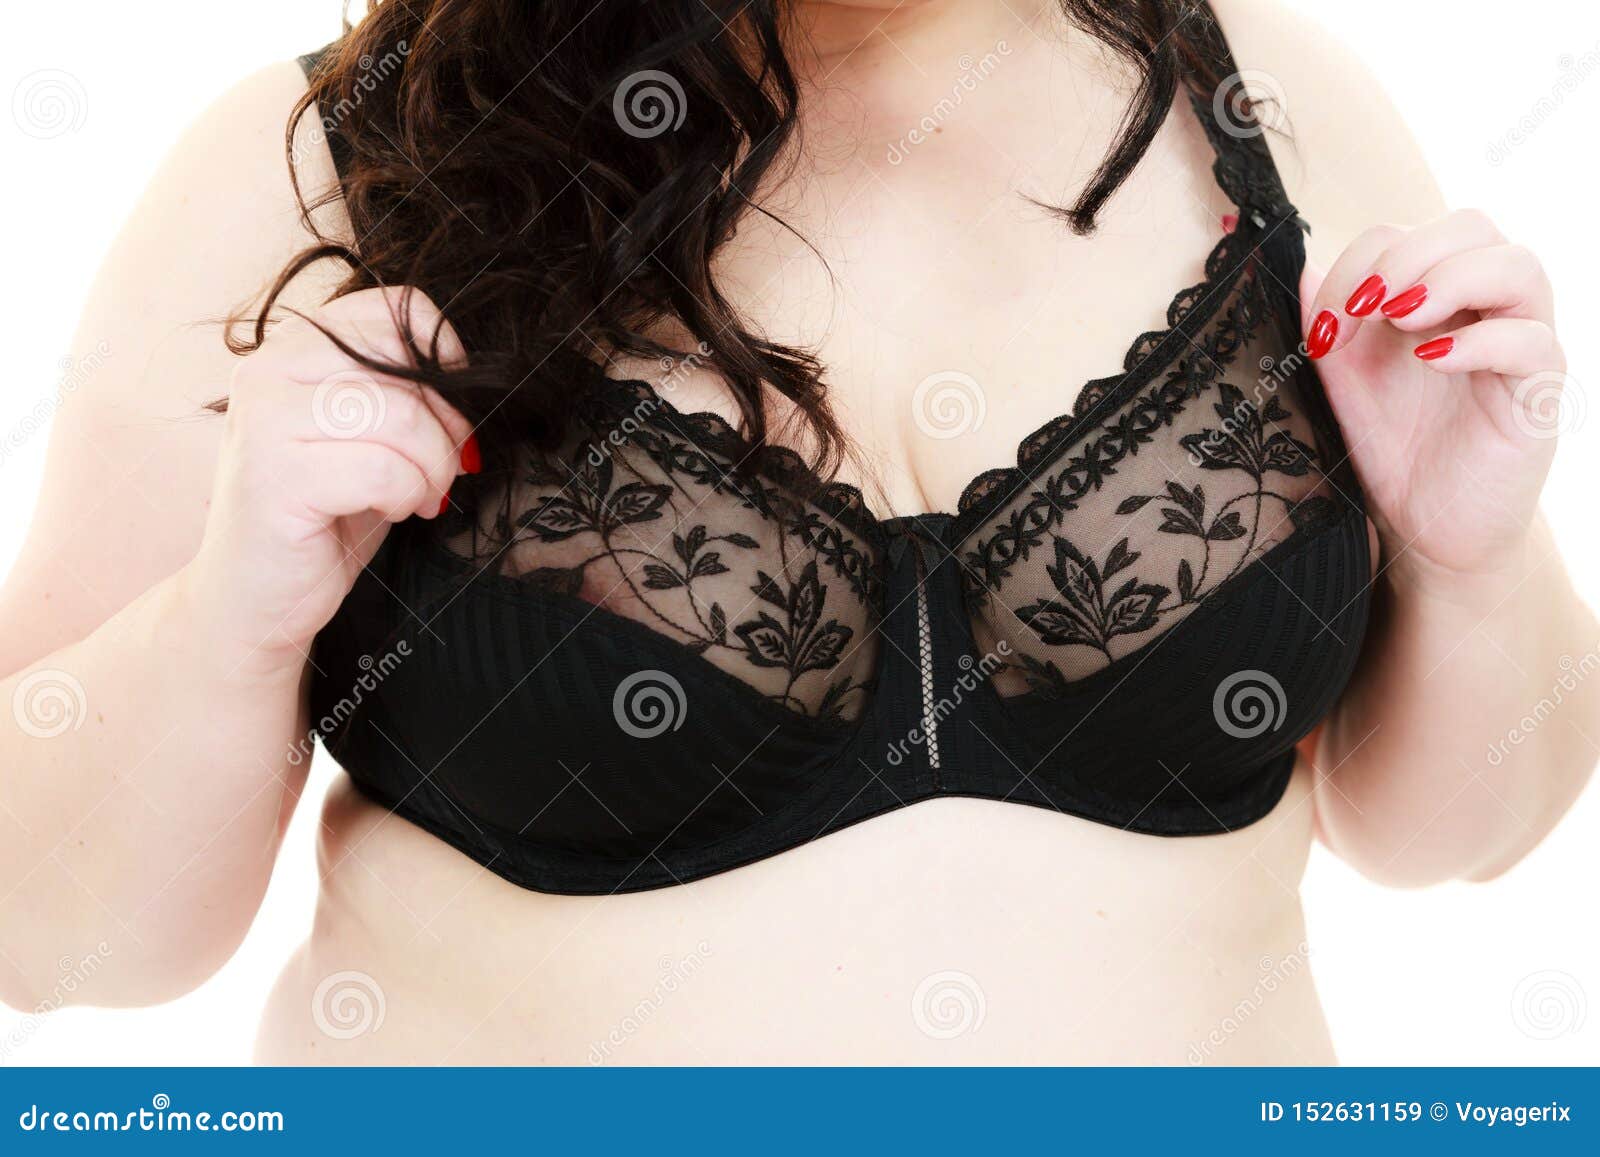 Female Big Breast In Lingerie. Plus Size Chubby Woman Wearing Bra